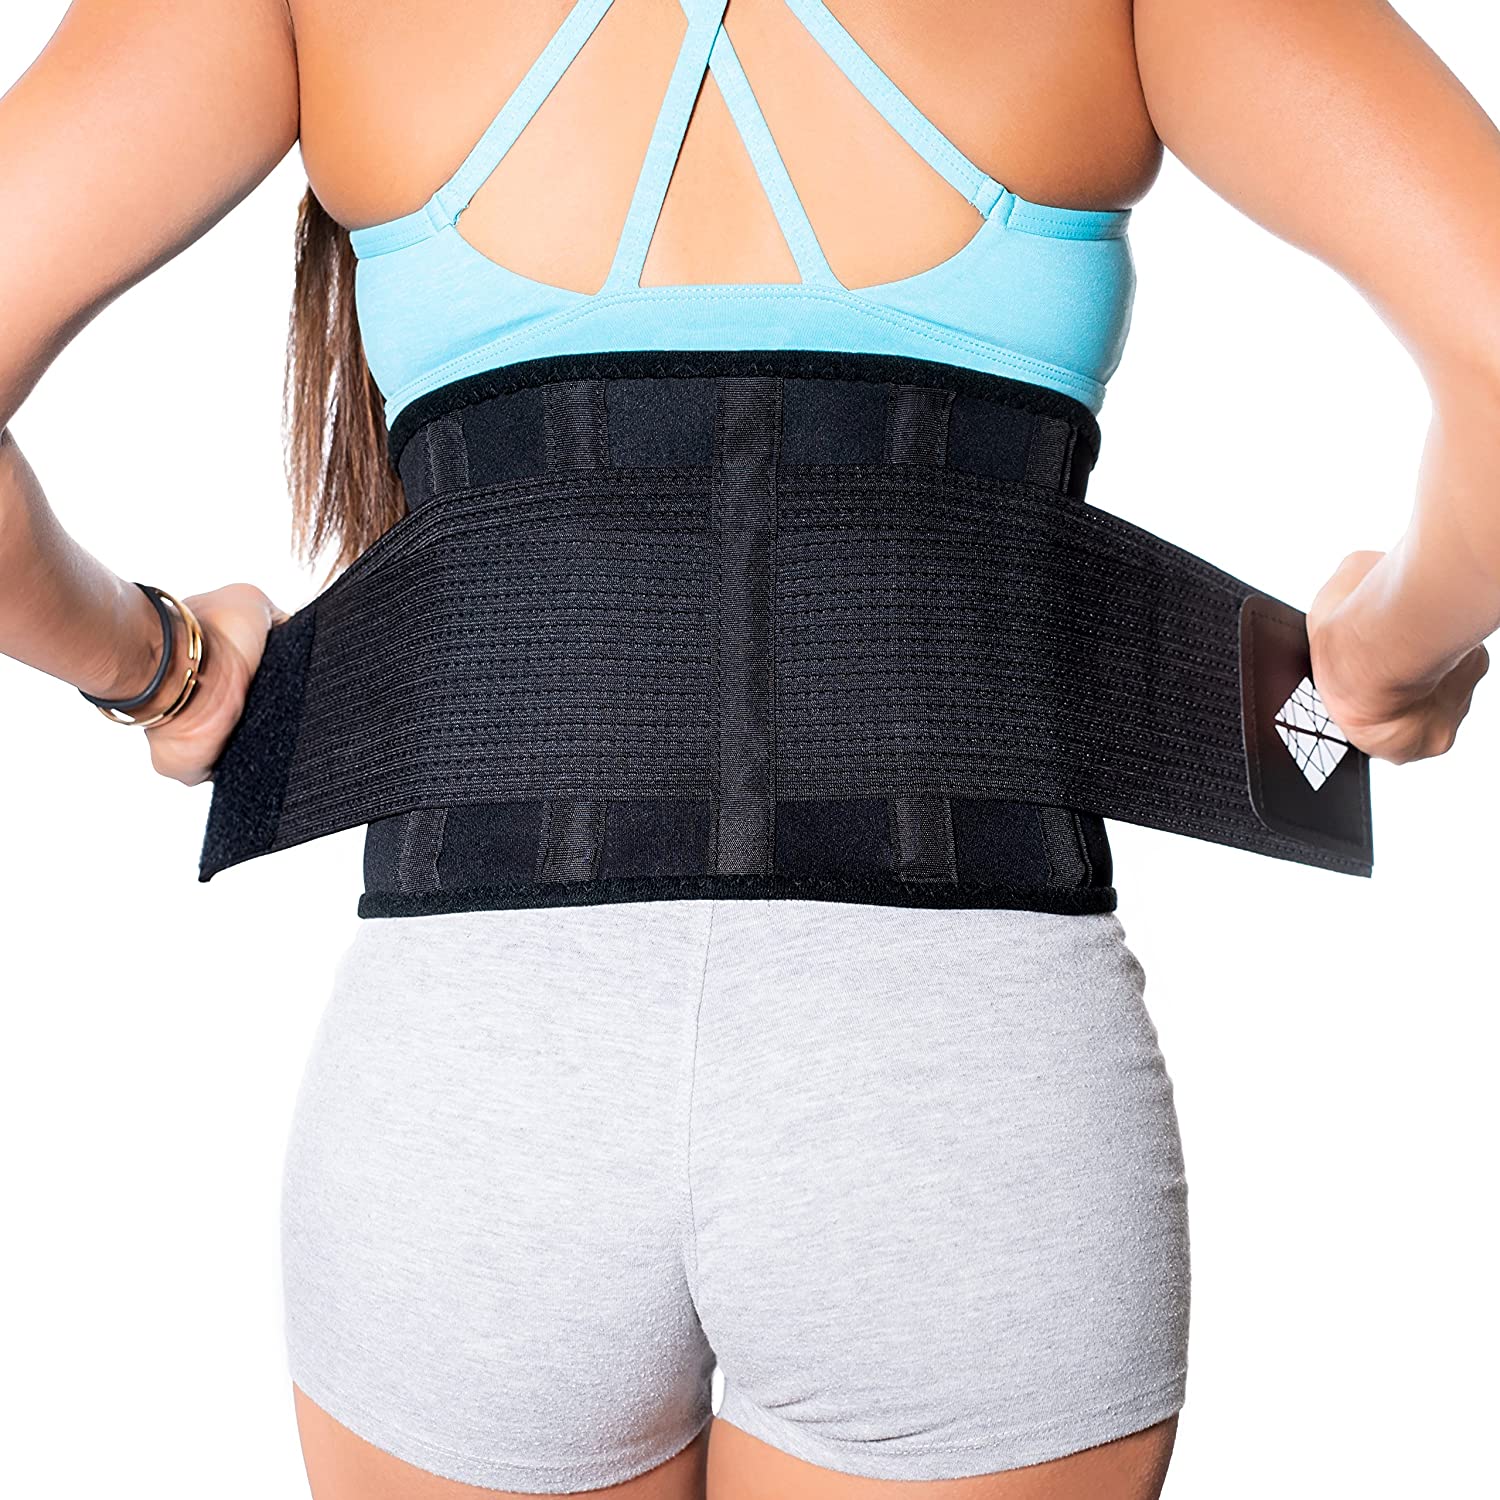 Herniated Back Support Girdle Lumbar Lower Waist Belt Brace Sciatica Pain  Relief